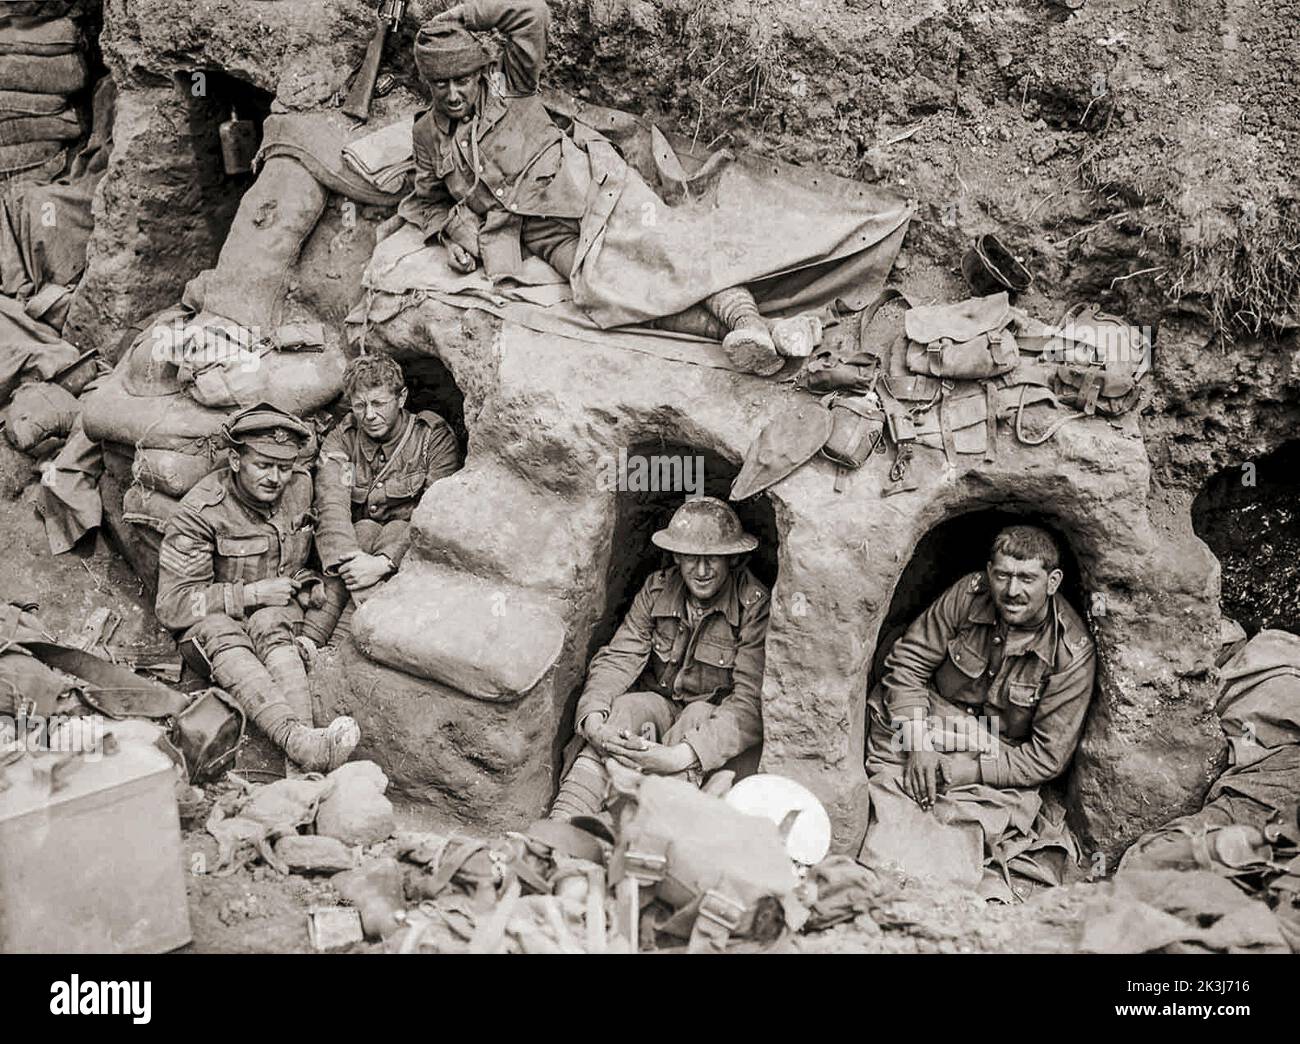 Los hombres del Regimiento Fronterizo descansan en dugouts poco profundos cerca de Thiepval Wood. La Batalla de Thiepval Ridge fue la primera gran ofensiva del Ejército de Reserva bajo el mando del Teniente General Hubert Gough, durante la Batalla del Somme en el Frente Occidental durante la Primera Guerra Mundial. Foto de stock